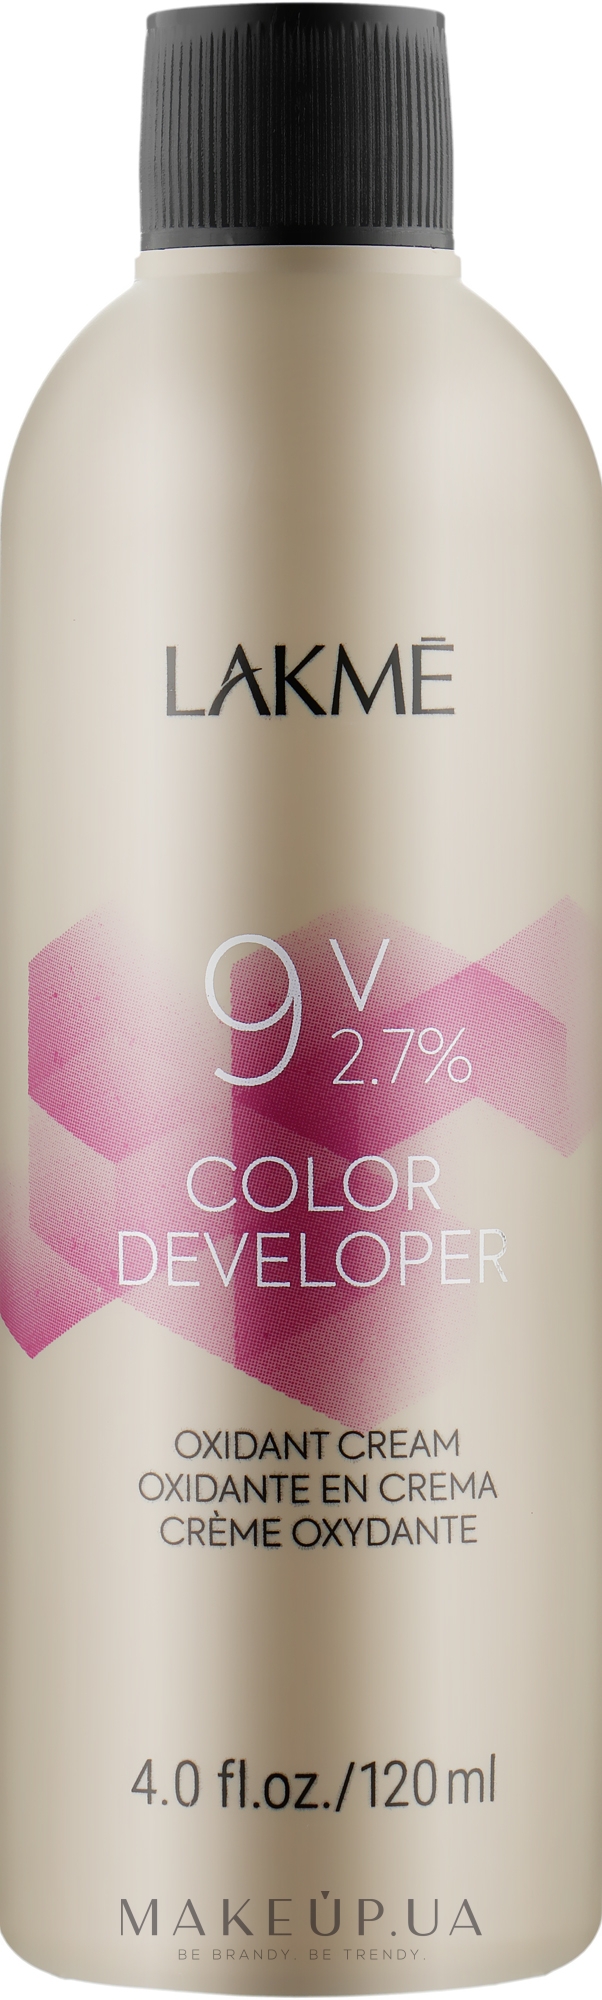 Крем-окислювач - Lakme Color Developer 9V (2,7%) — фото 120ml